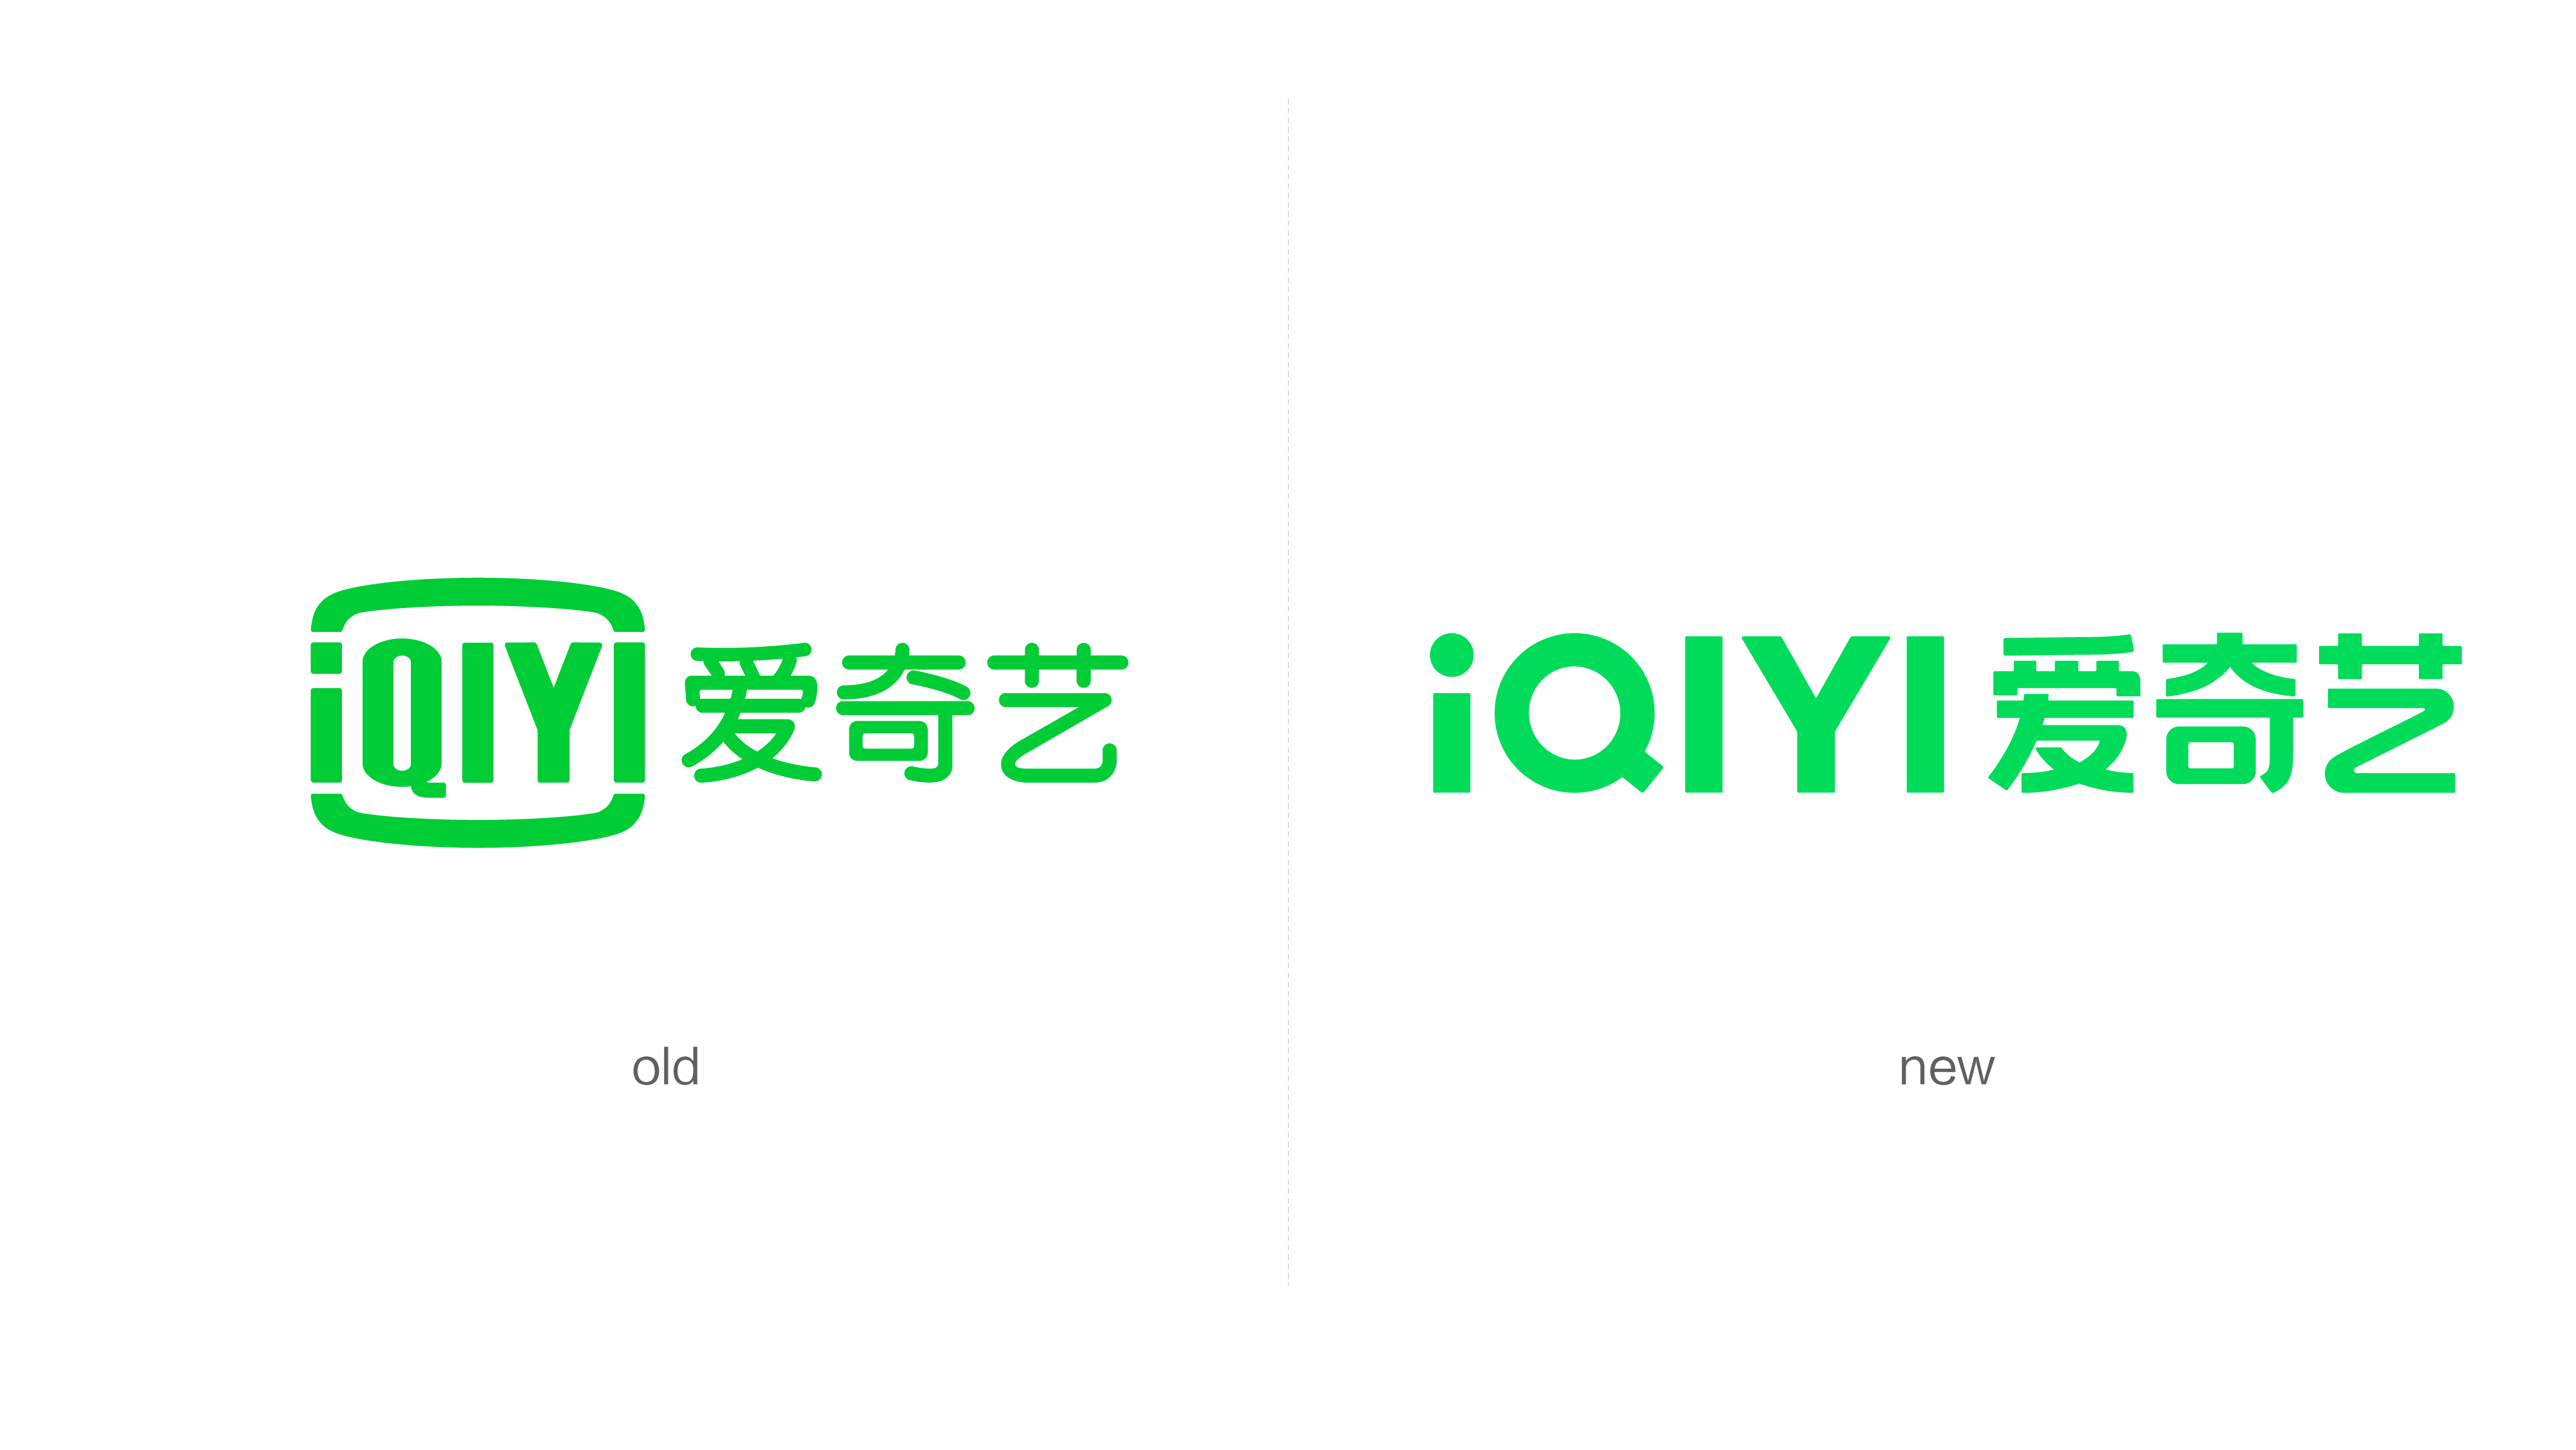 爱奇艺logo高清图片